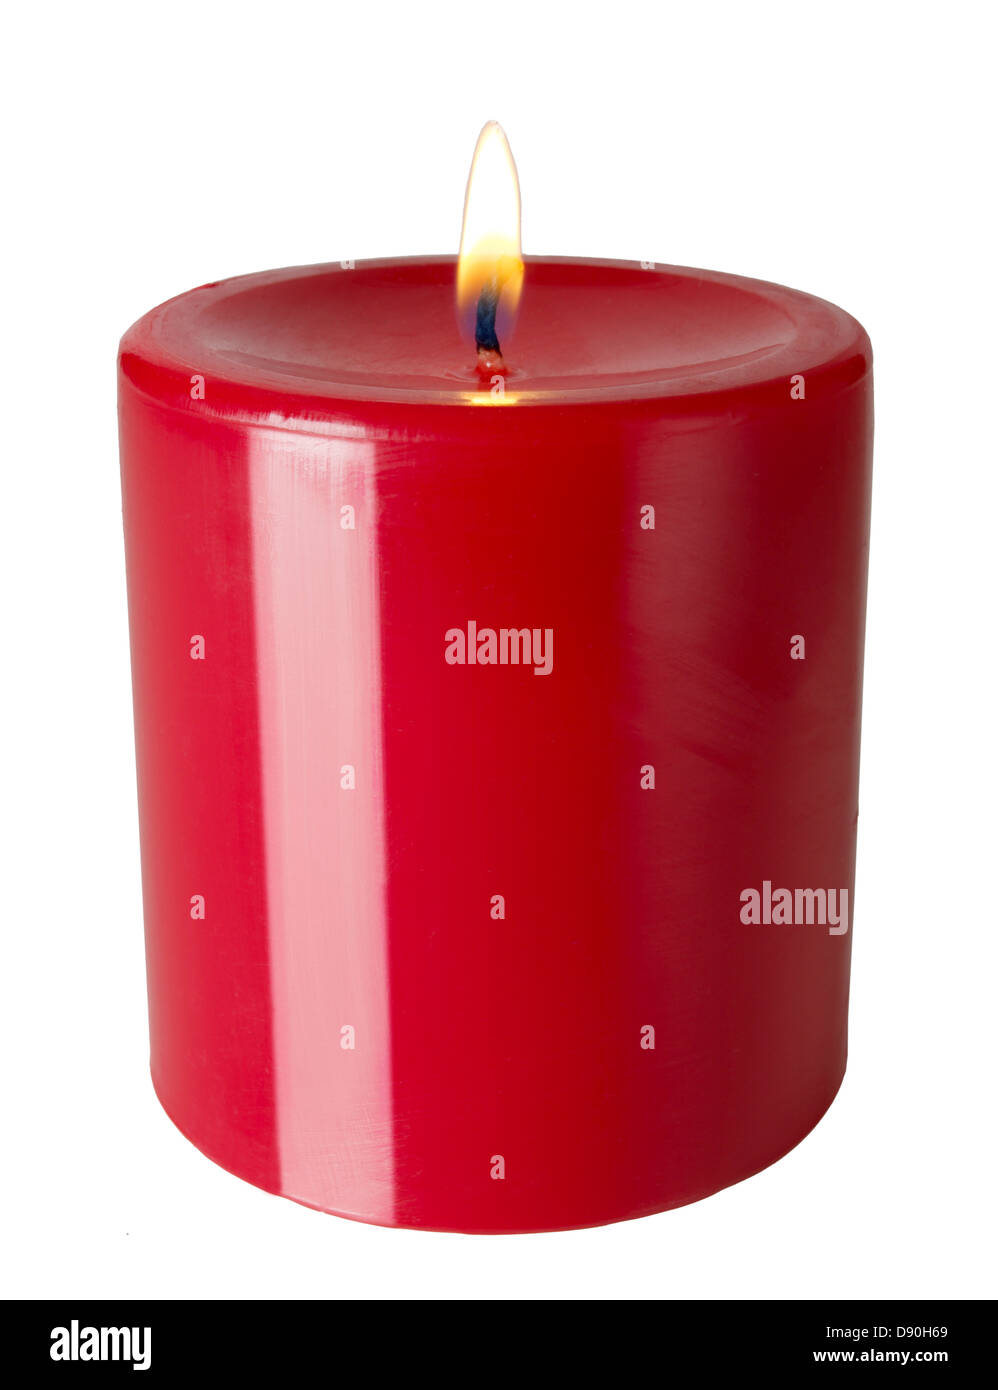 Rote Kerze Stockfotografie - Alamy